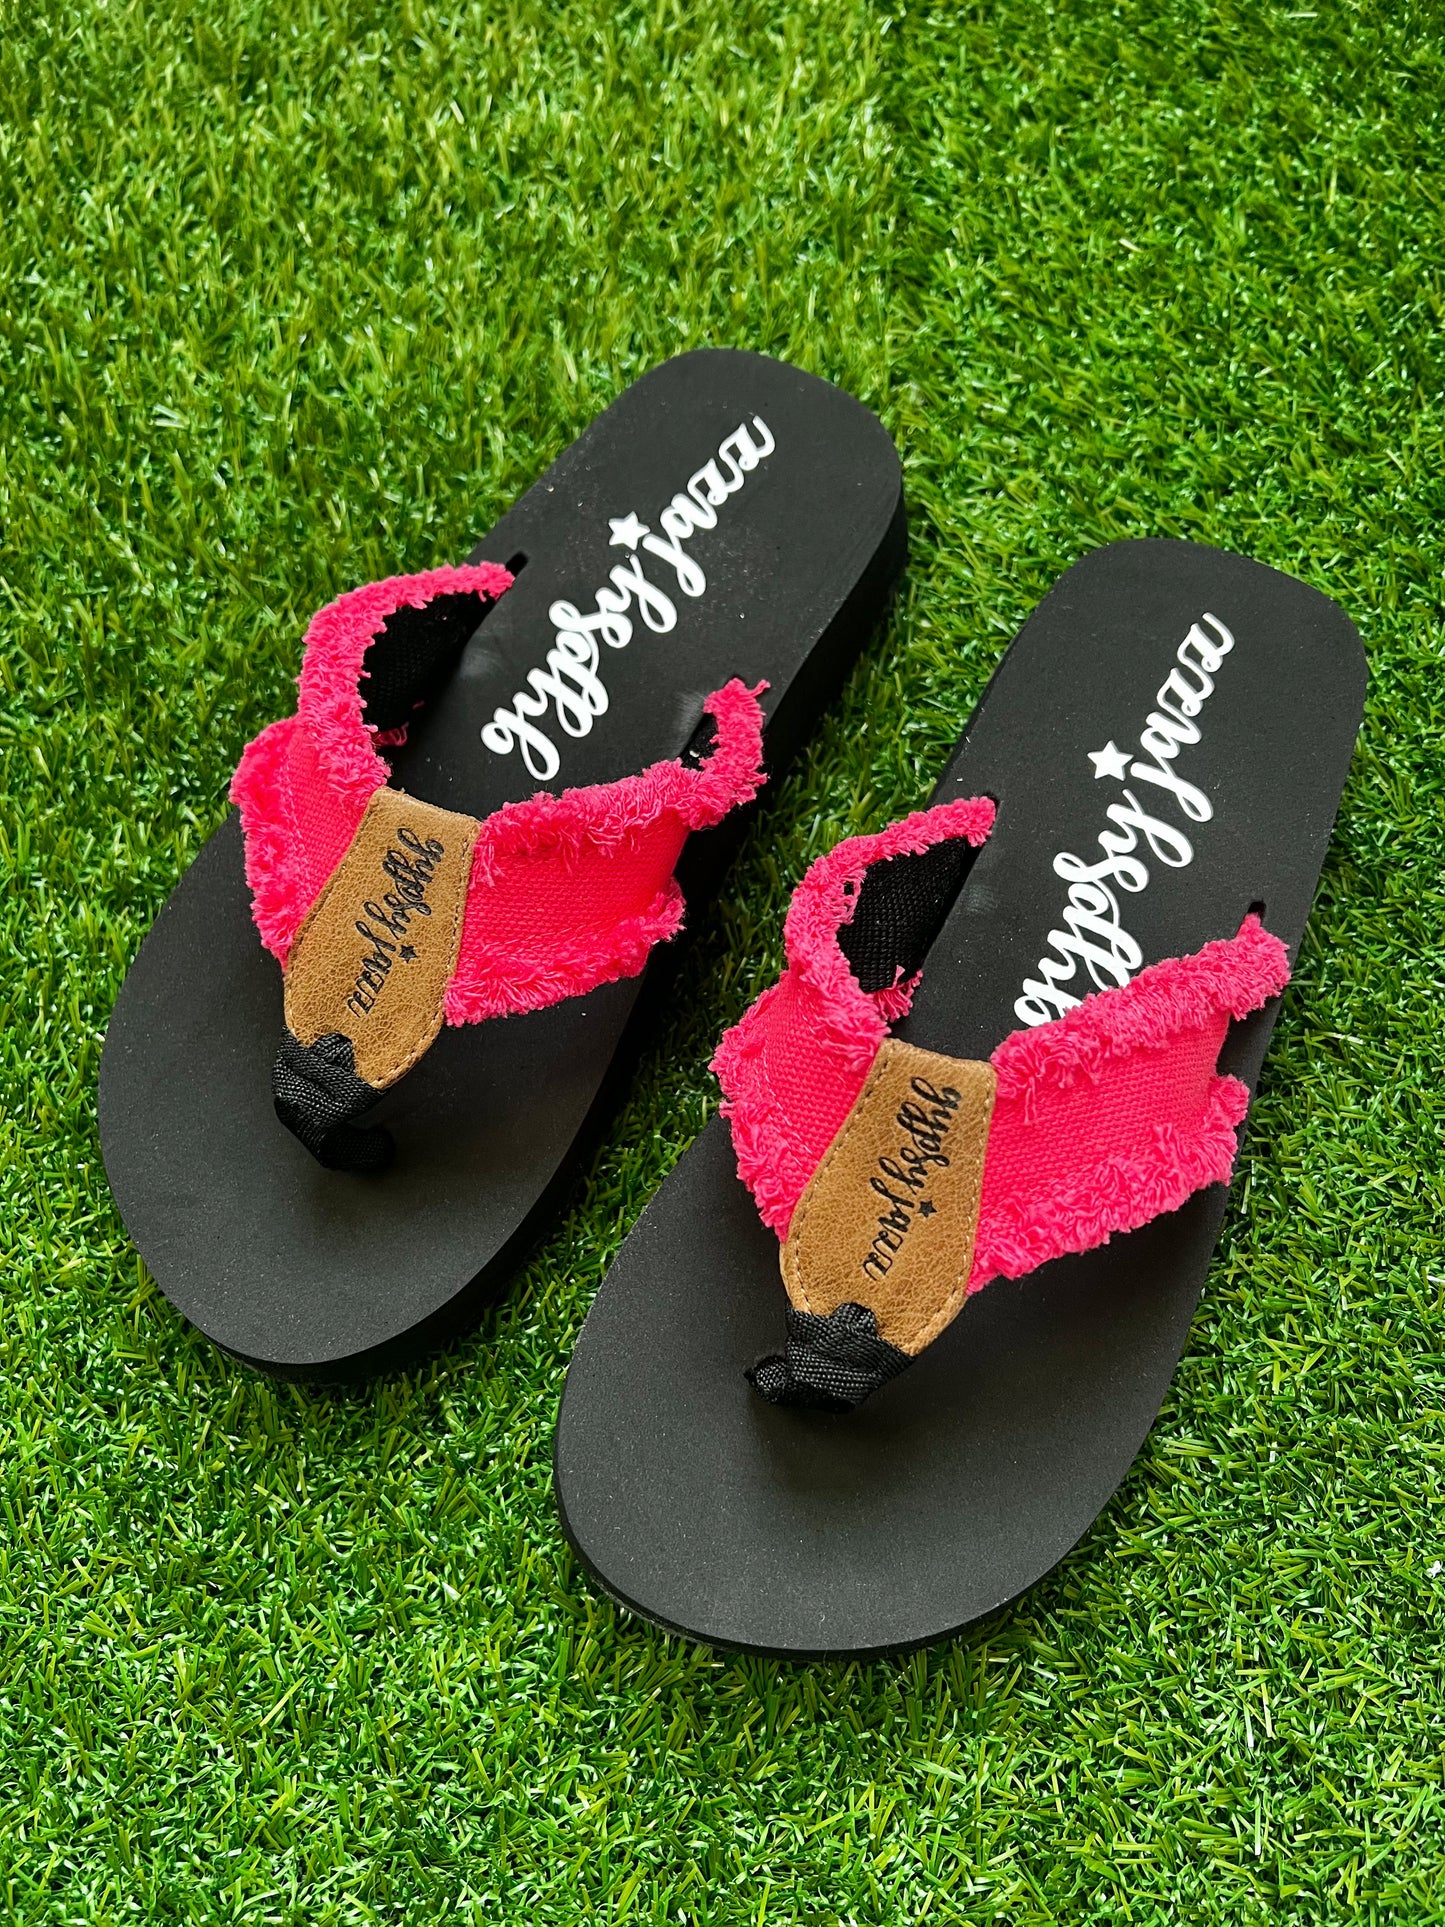 Gypsy Jazz Flip Flop Sandals - Hot Pink